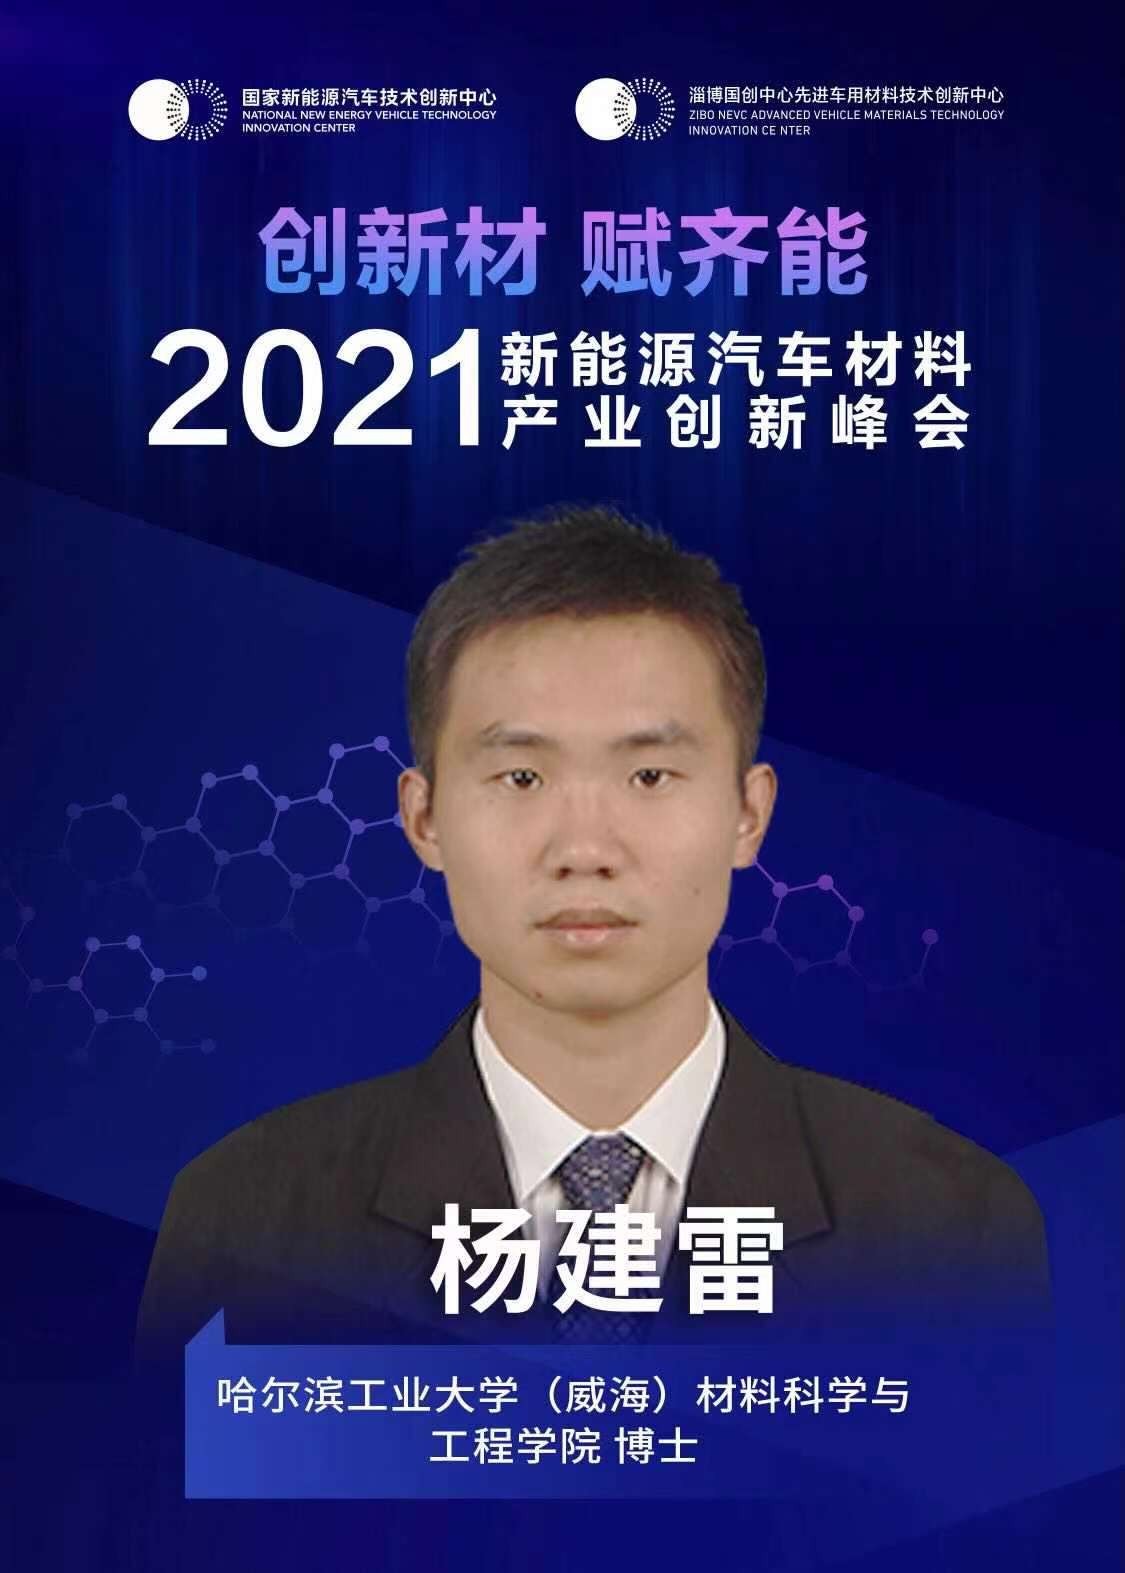 “2021年新能源汽车材料产业创新峰会”即将召开，哈尔滨工业大学（威海）材料科学与工程学院博士杨建雷确认出席